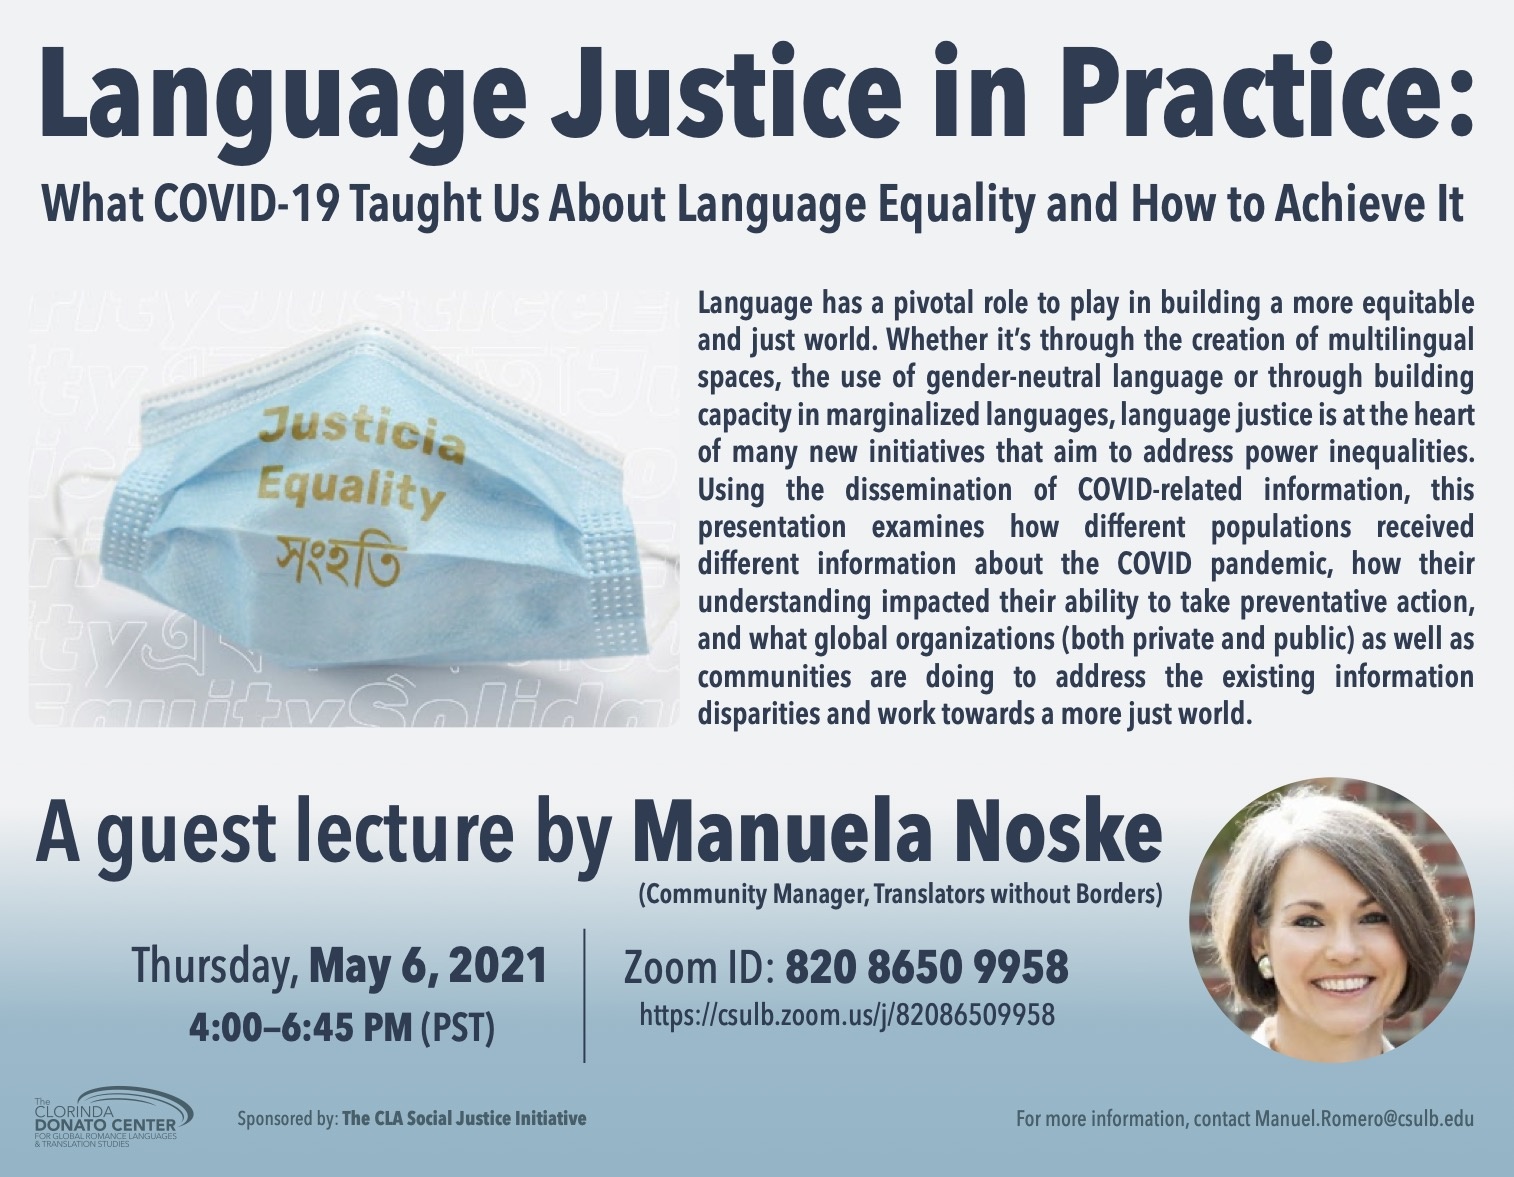 Event flyer for Manuela Noske lecture